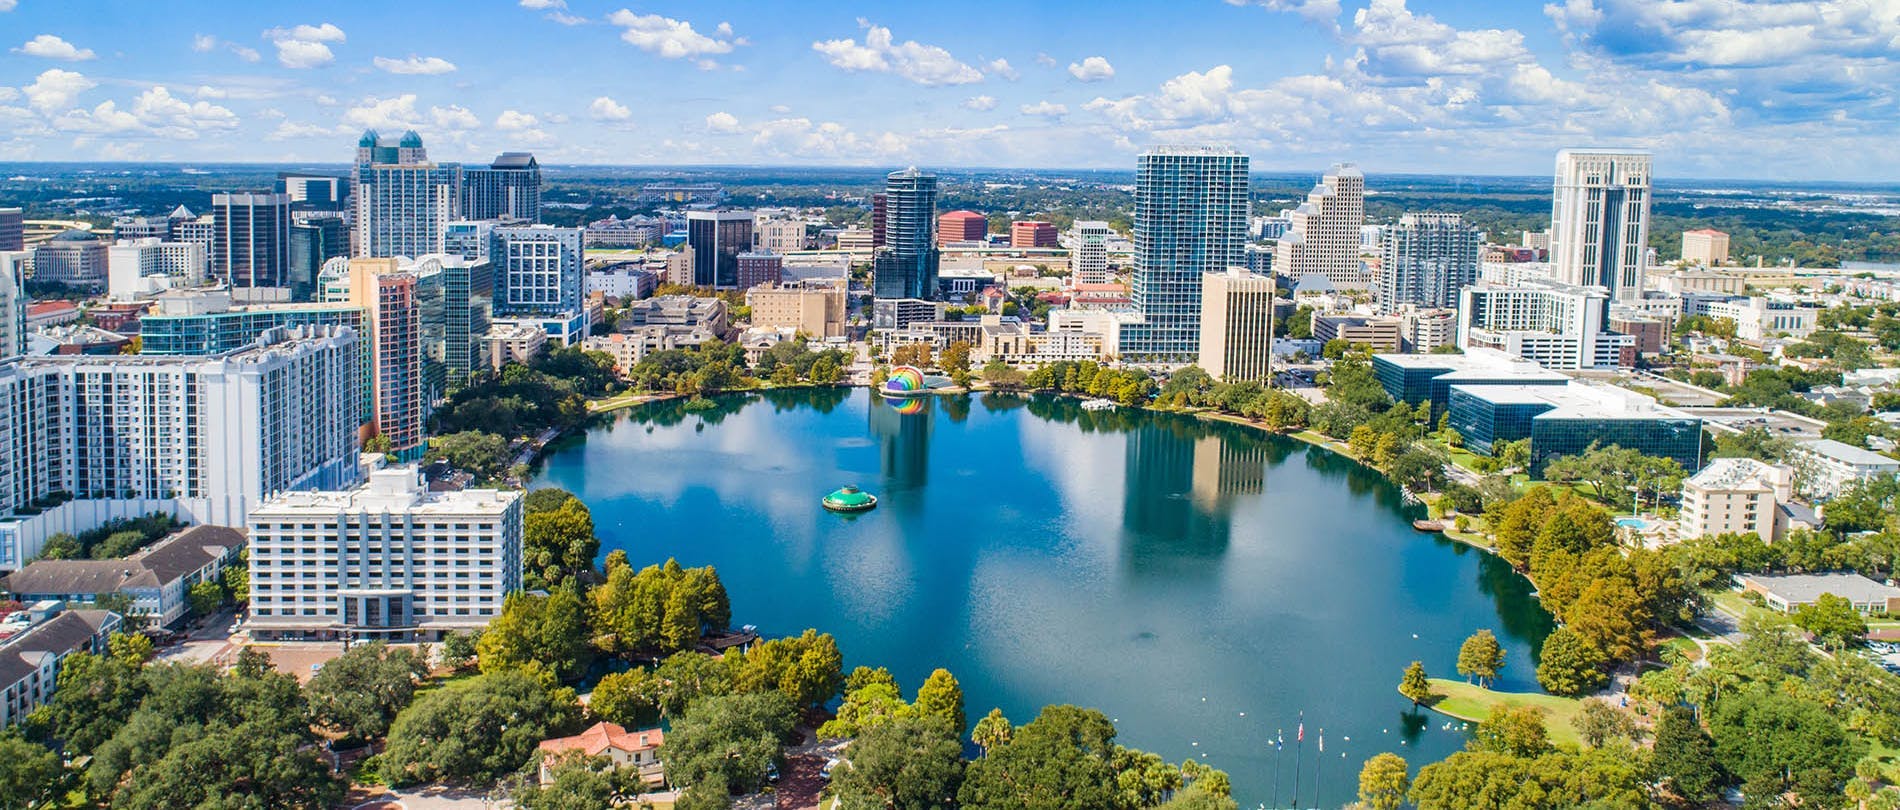 Orlando Water Quality Sky View of Orlando Florida